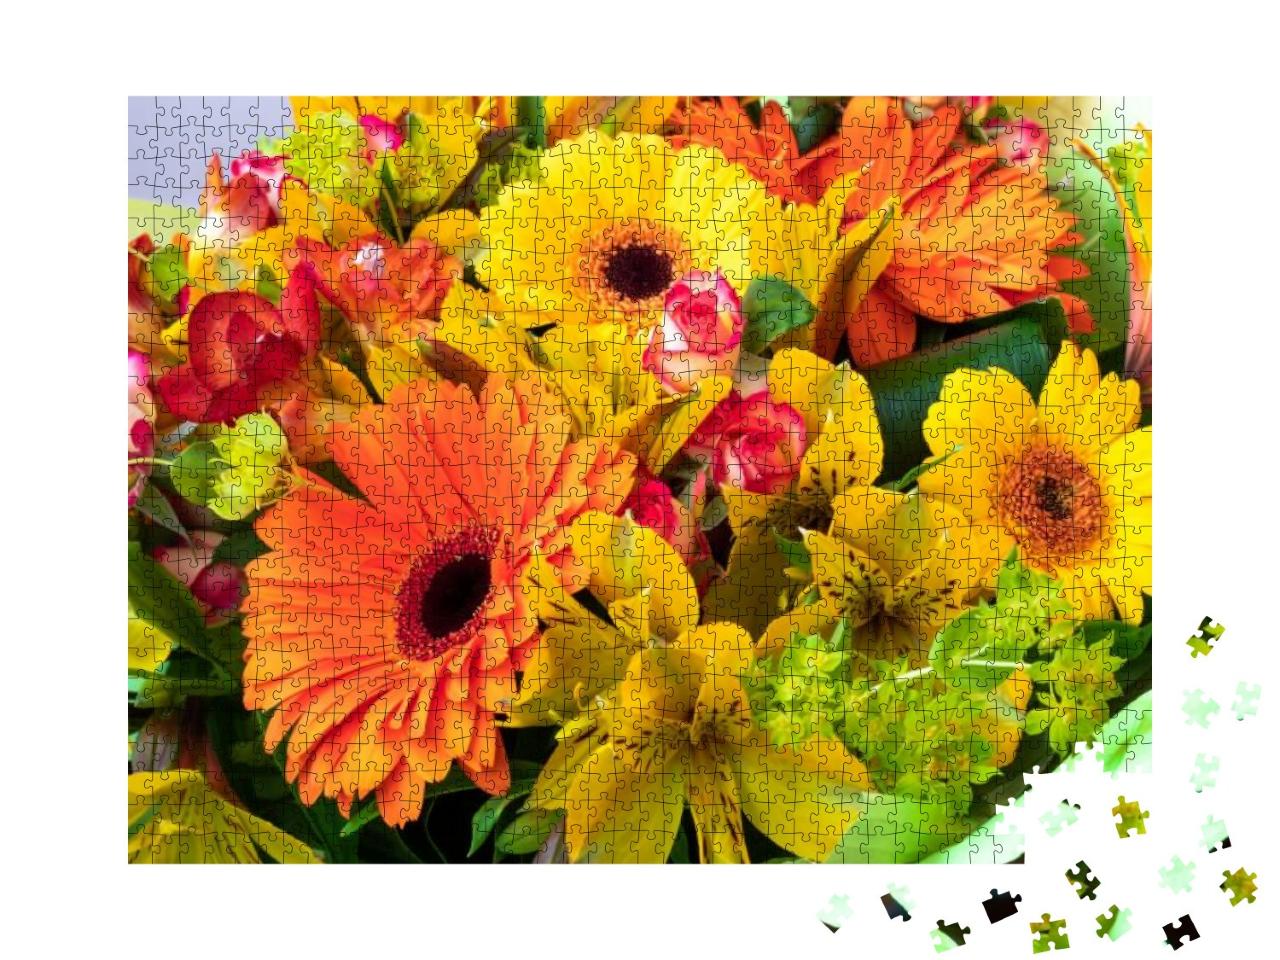 Puzzle 1000 Teile „Leuchtend gelbe und orange Gerbera in einem Blumenstrauß“